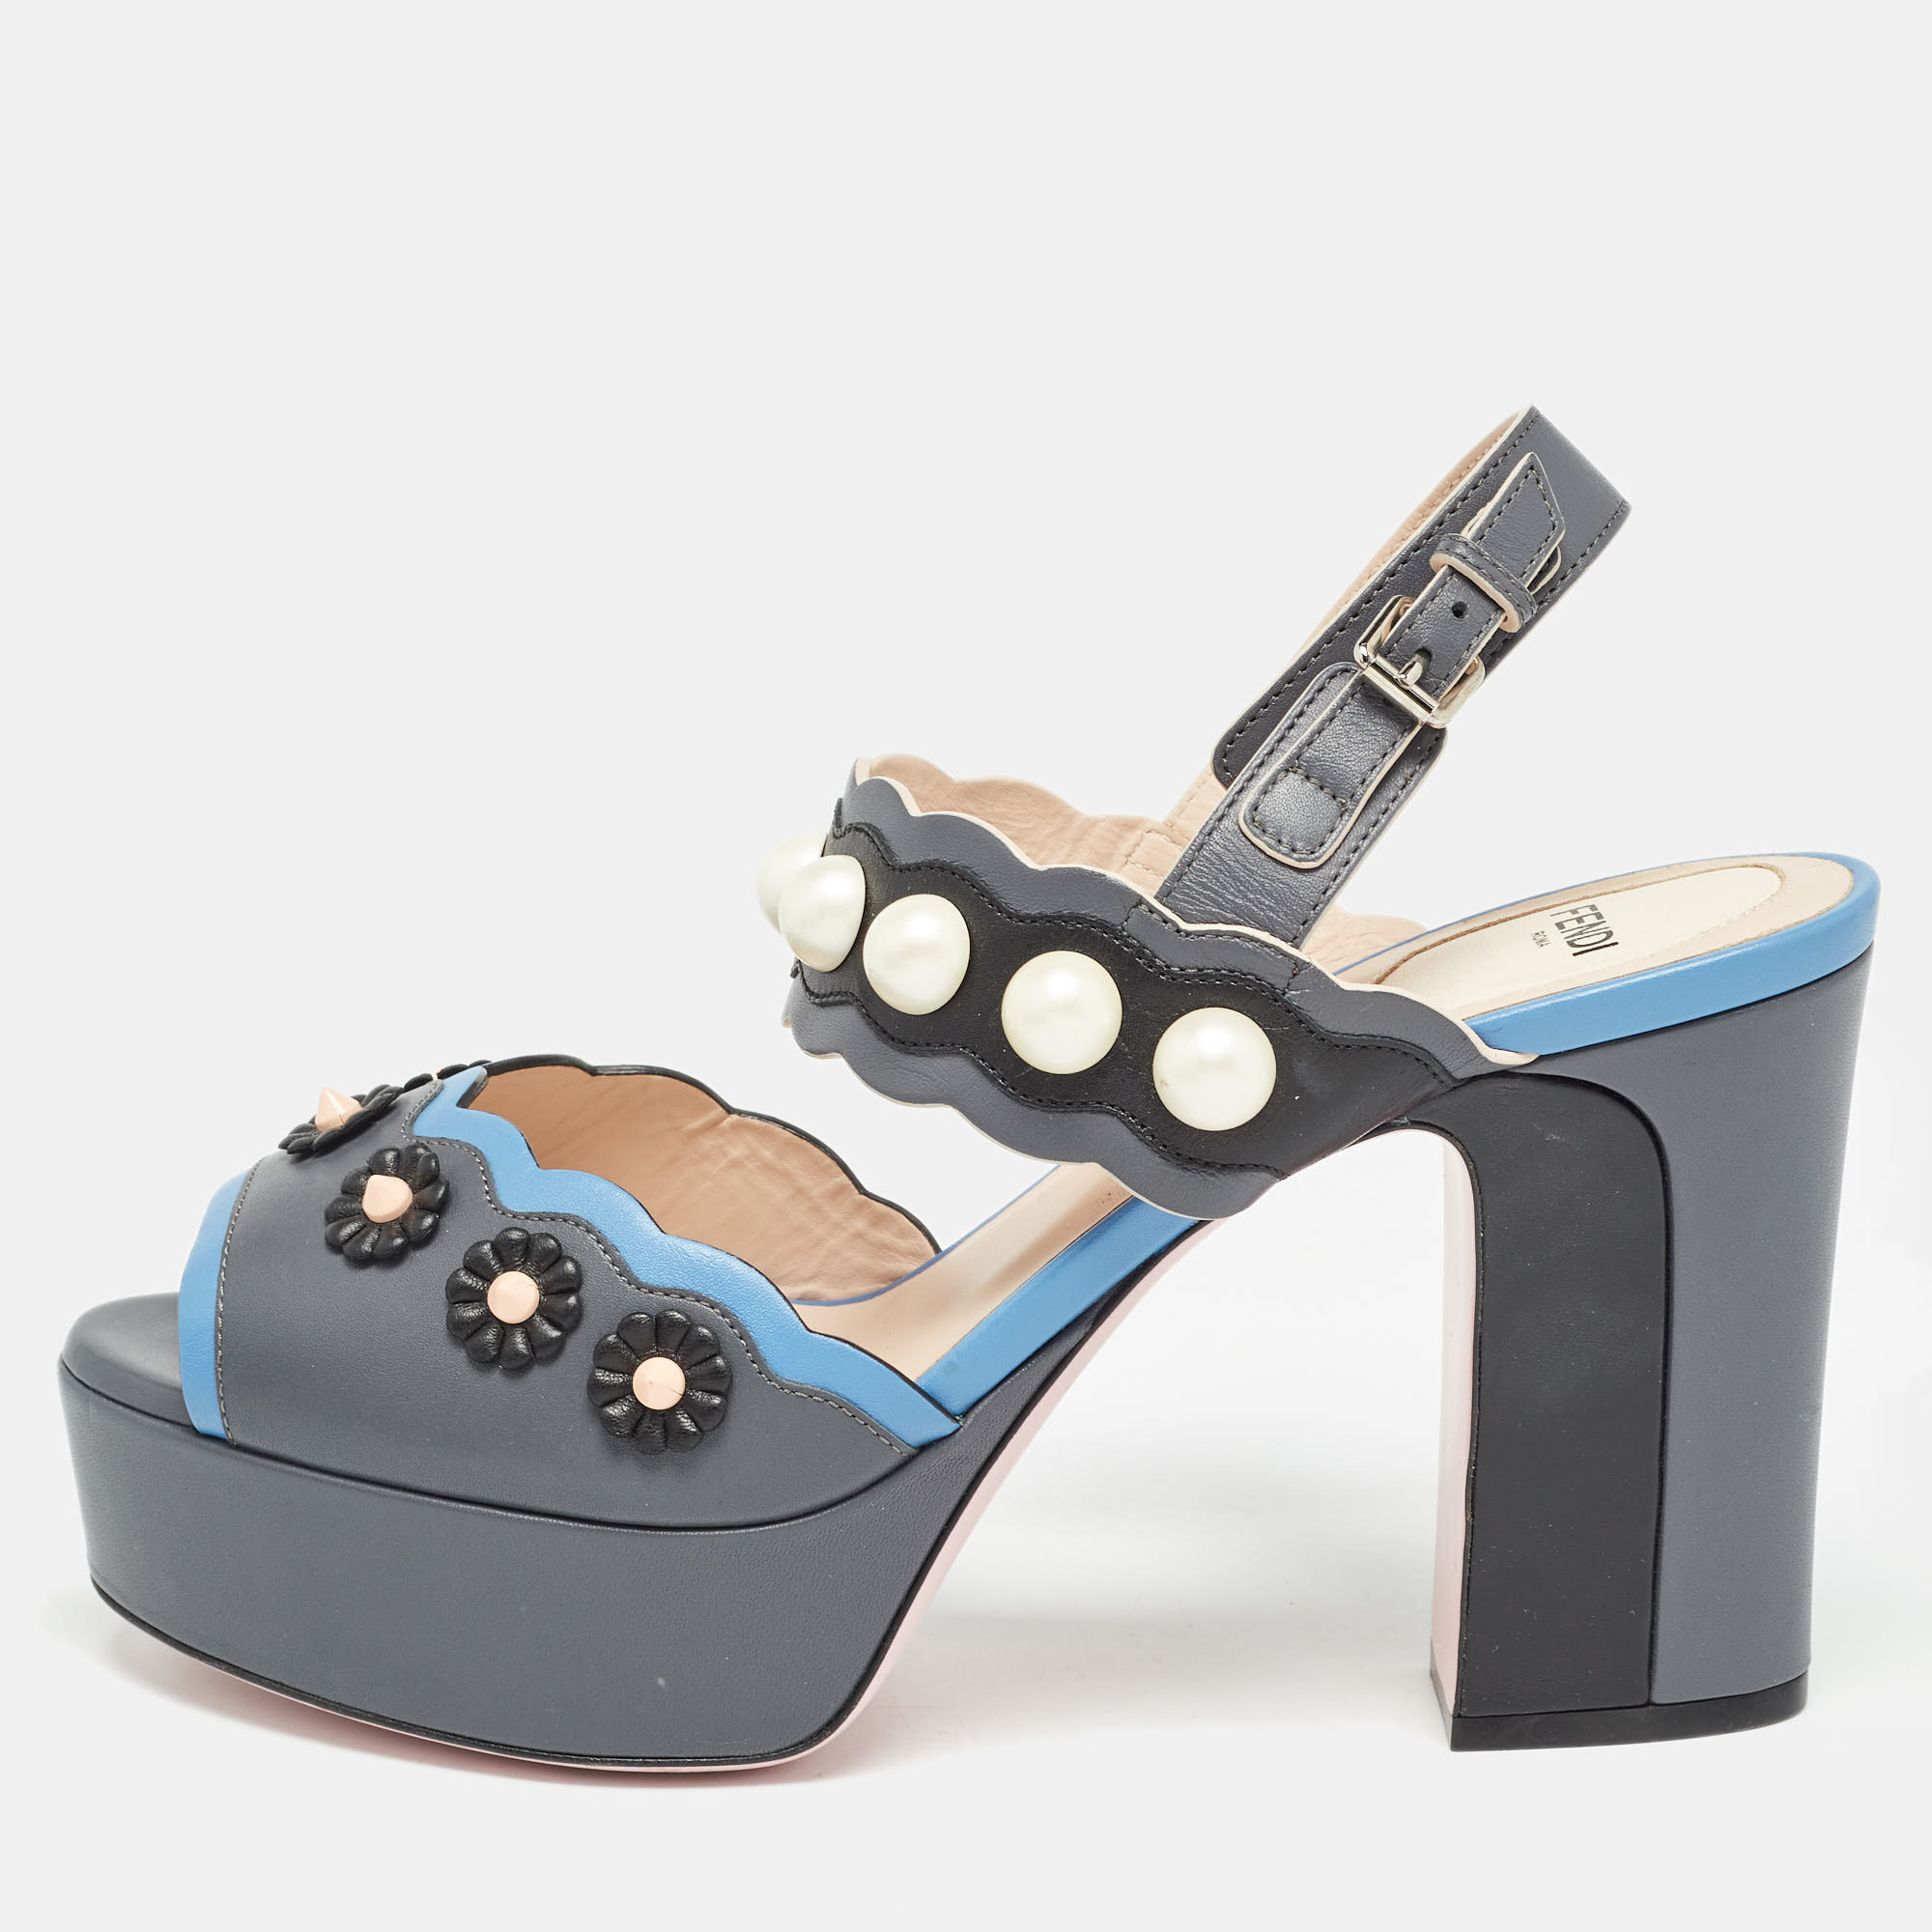 Fendi grey/blue leather faux pearl embellished platform sandals size 40